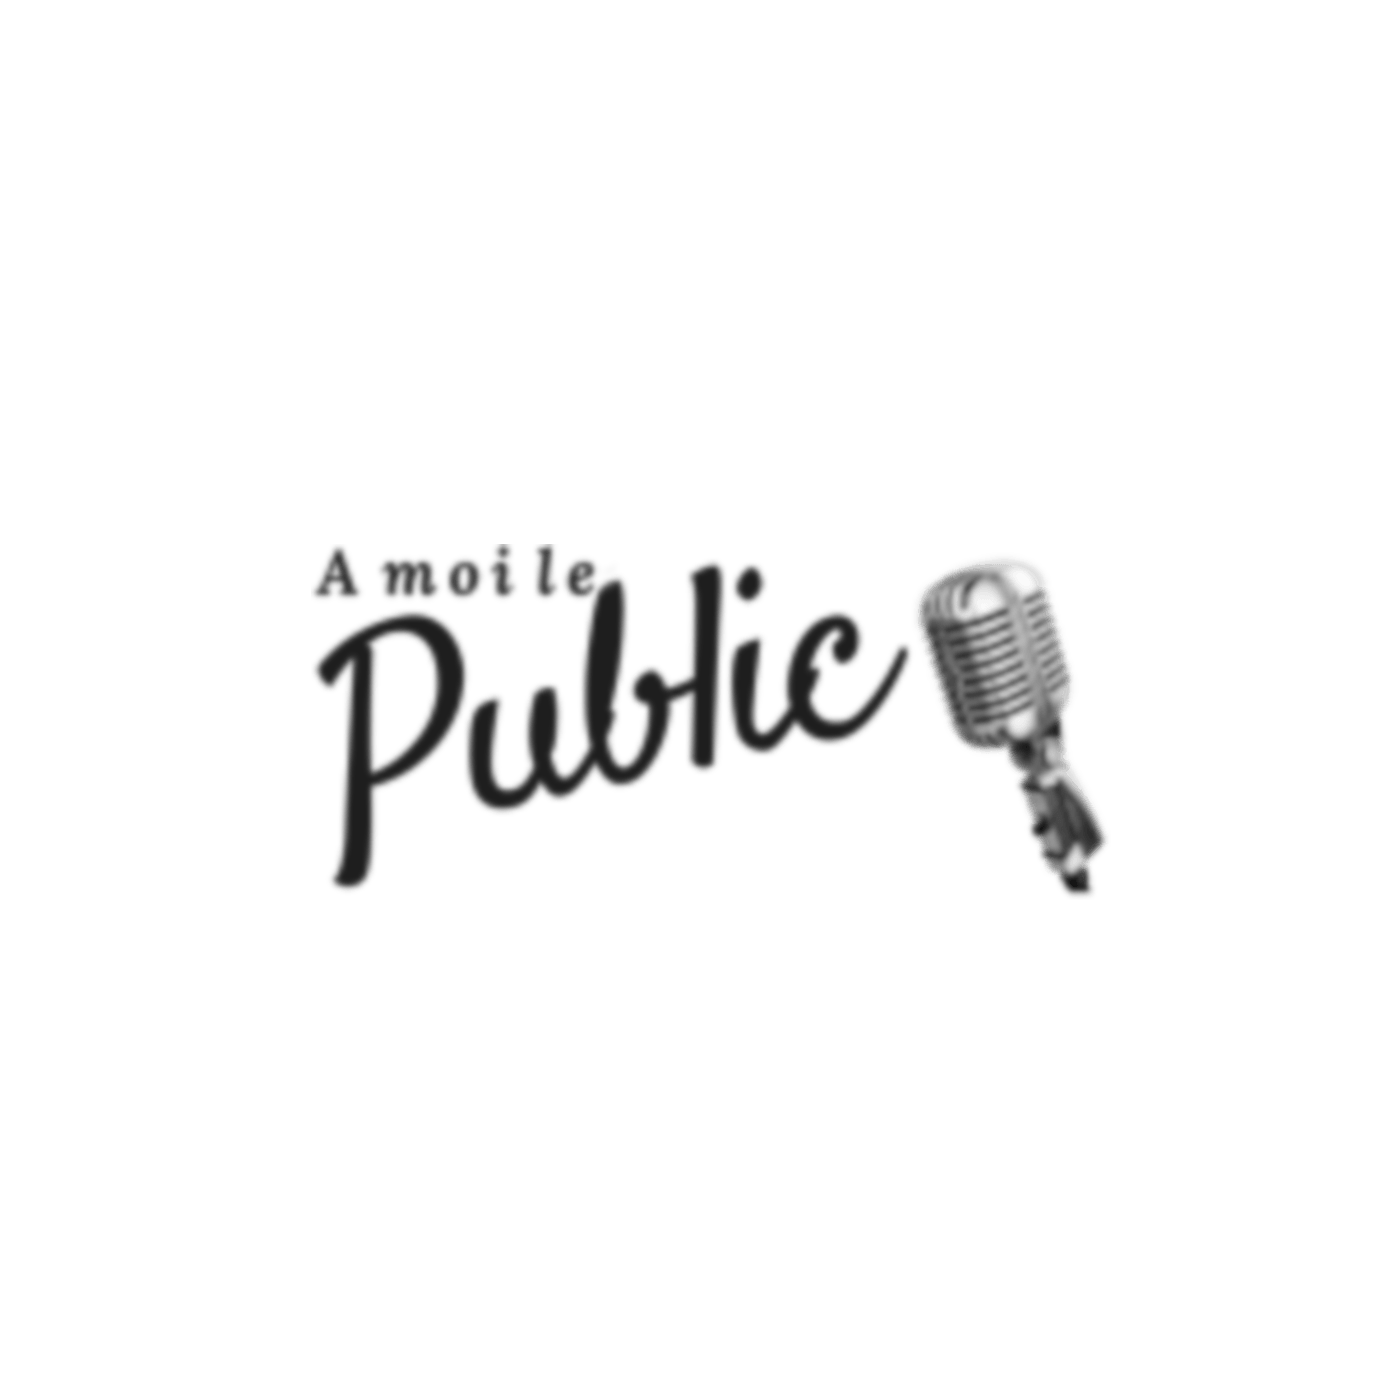 Podcast : parler en public